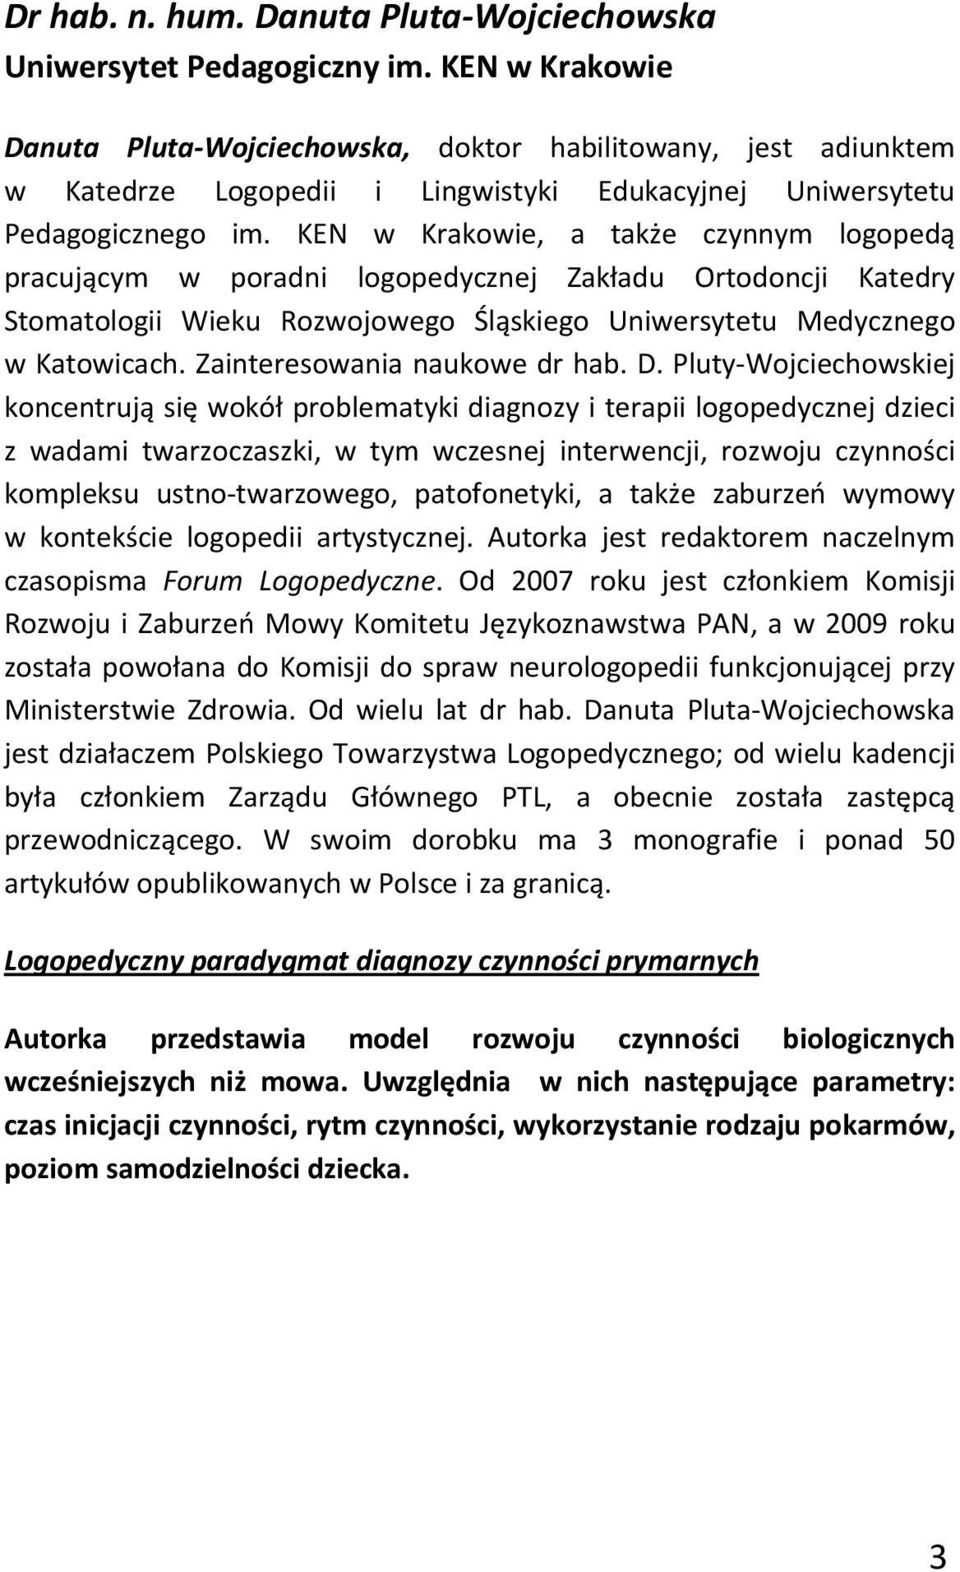 KEN w Krakowie, a także czynnym logopedą pracującym w poradni logopedycznej Zakładu Ortodoncji Katedry Stomatologii Wieku Rozwojowego Śląskiego Uniwersytetu Medycznego w Katowicach.